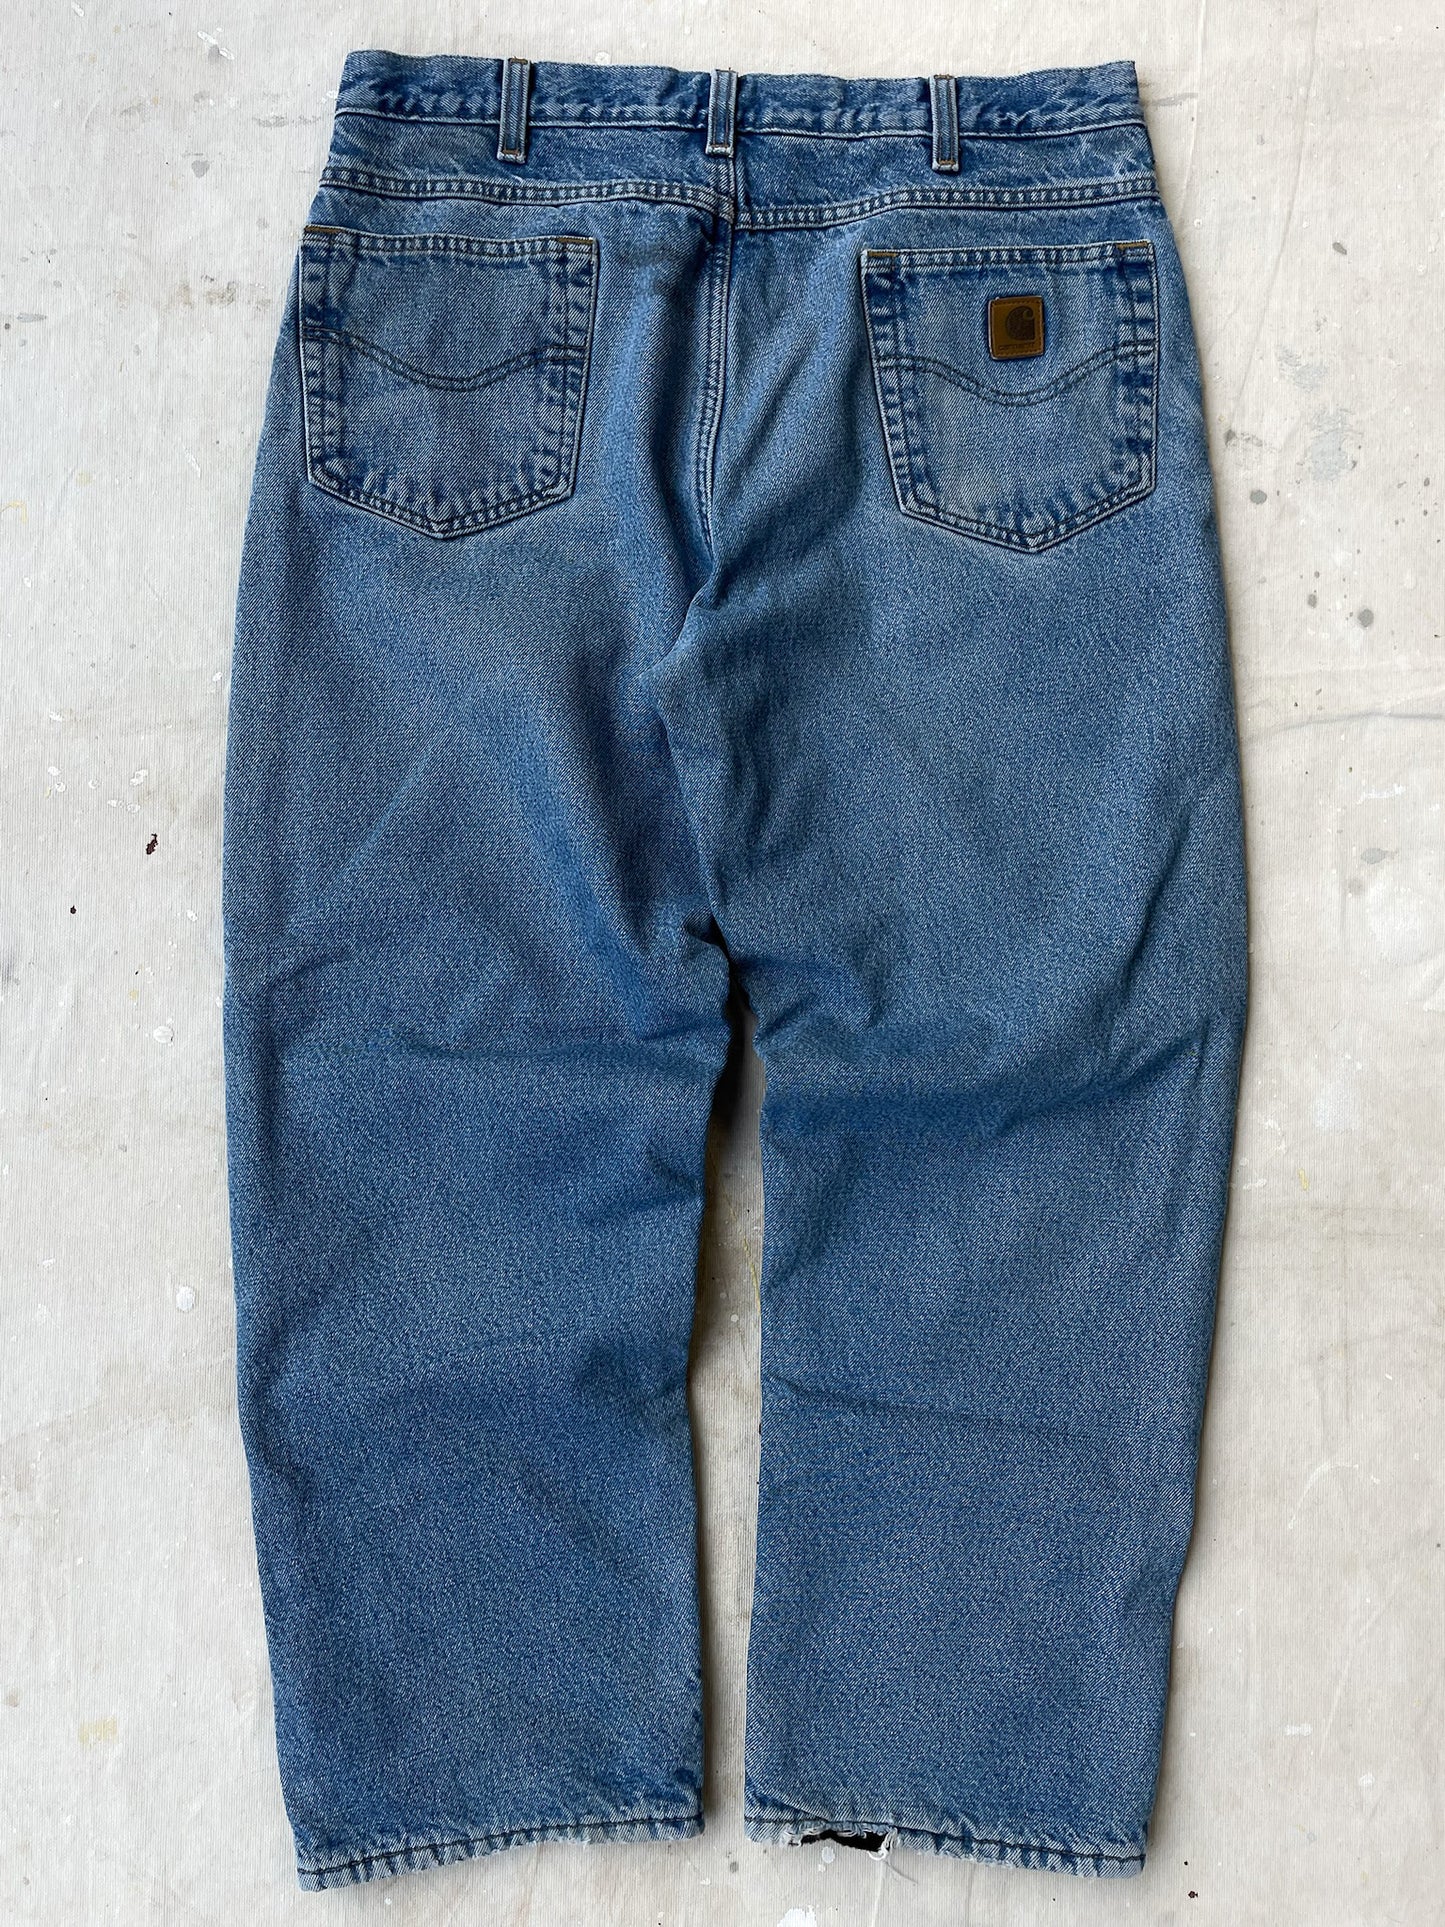 Carhartt Fleece Lined Jeans—[36x30]